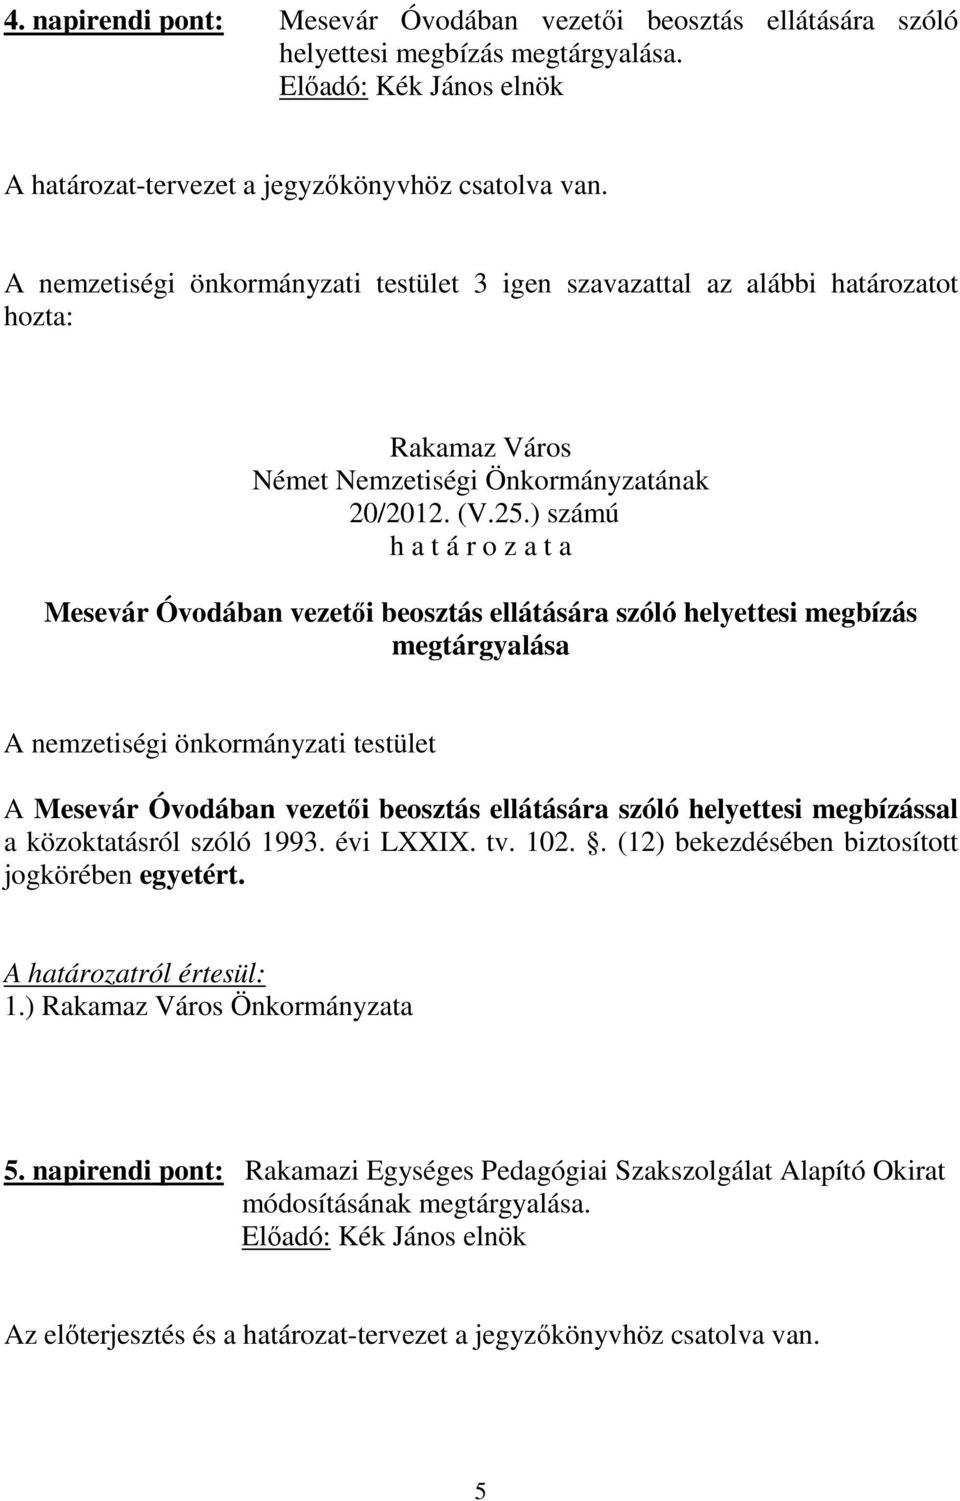 ) számú Mesevár Óvodában vezetői beosztás ellátására szóló helyettesi megbízás megtárgyalása A Mesevár Óvodában vezetői beosztás ellátására szóló helyettesi